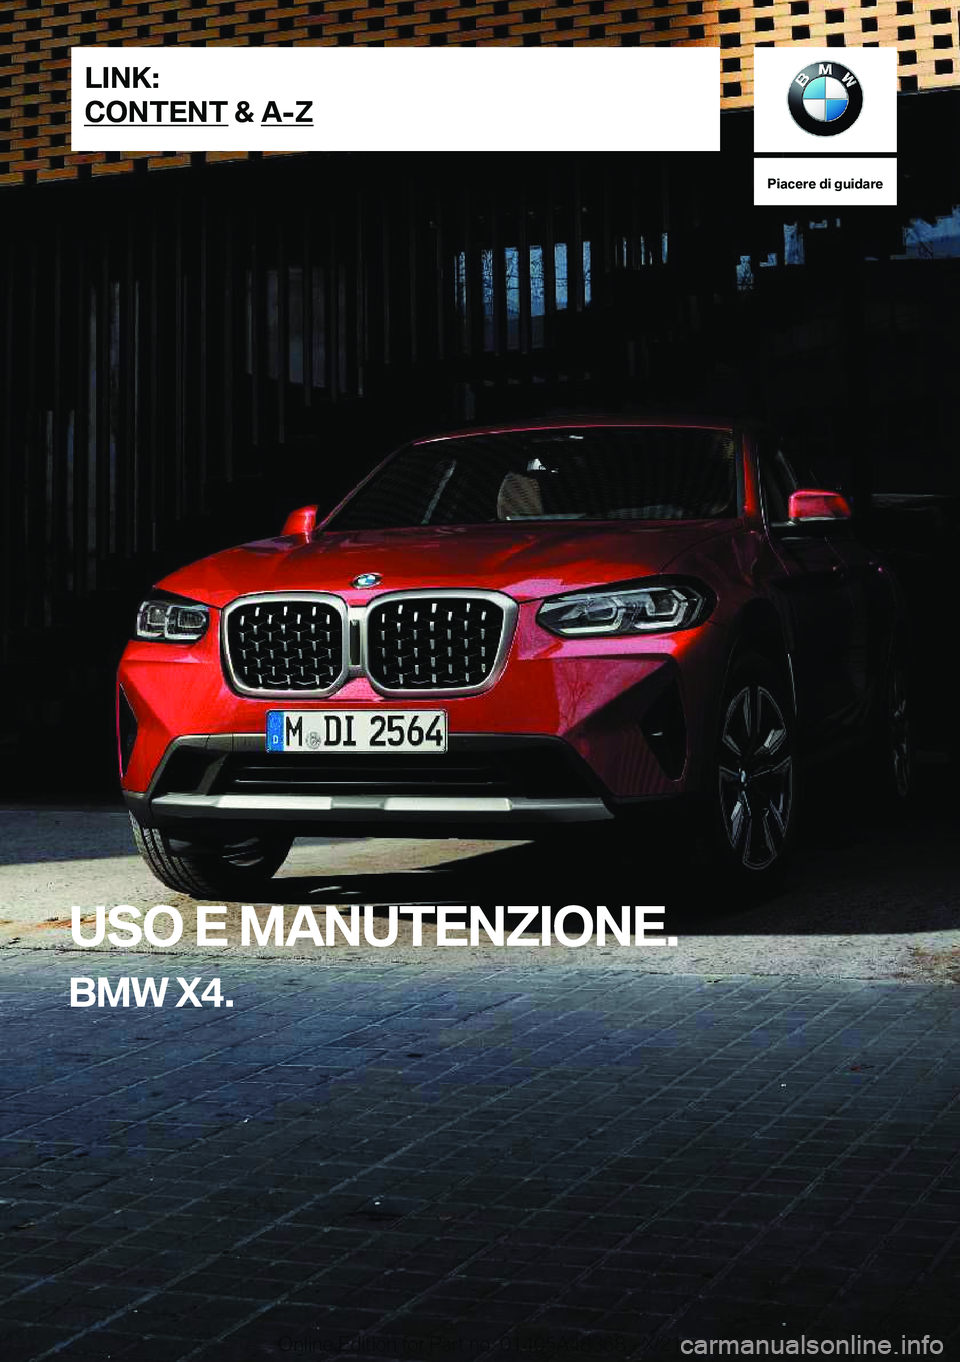 BMW X4 2022  Libretti Di Uso E manutenzione (in Italian) �P�i�a�c�e�r�e��d�i��g�u�i�d�a�r�e
�U�S�O��E��M�A�N�U�T�E�N�Z�I�O�N�E�.
�B�M�W��X�4�.�L�I�N�K�:
�C�O�N�T�E�N�T��&��A�-�Z�O�n�l�i�n�e��E�d�i�t�i�o�n��f�o�r��P�a�r�t��n�o�.��0�1�4�0�5�A�4�8�